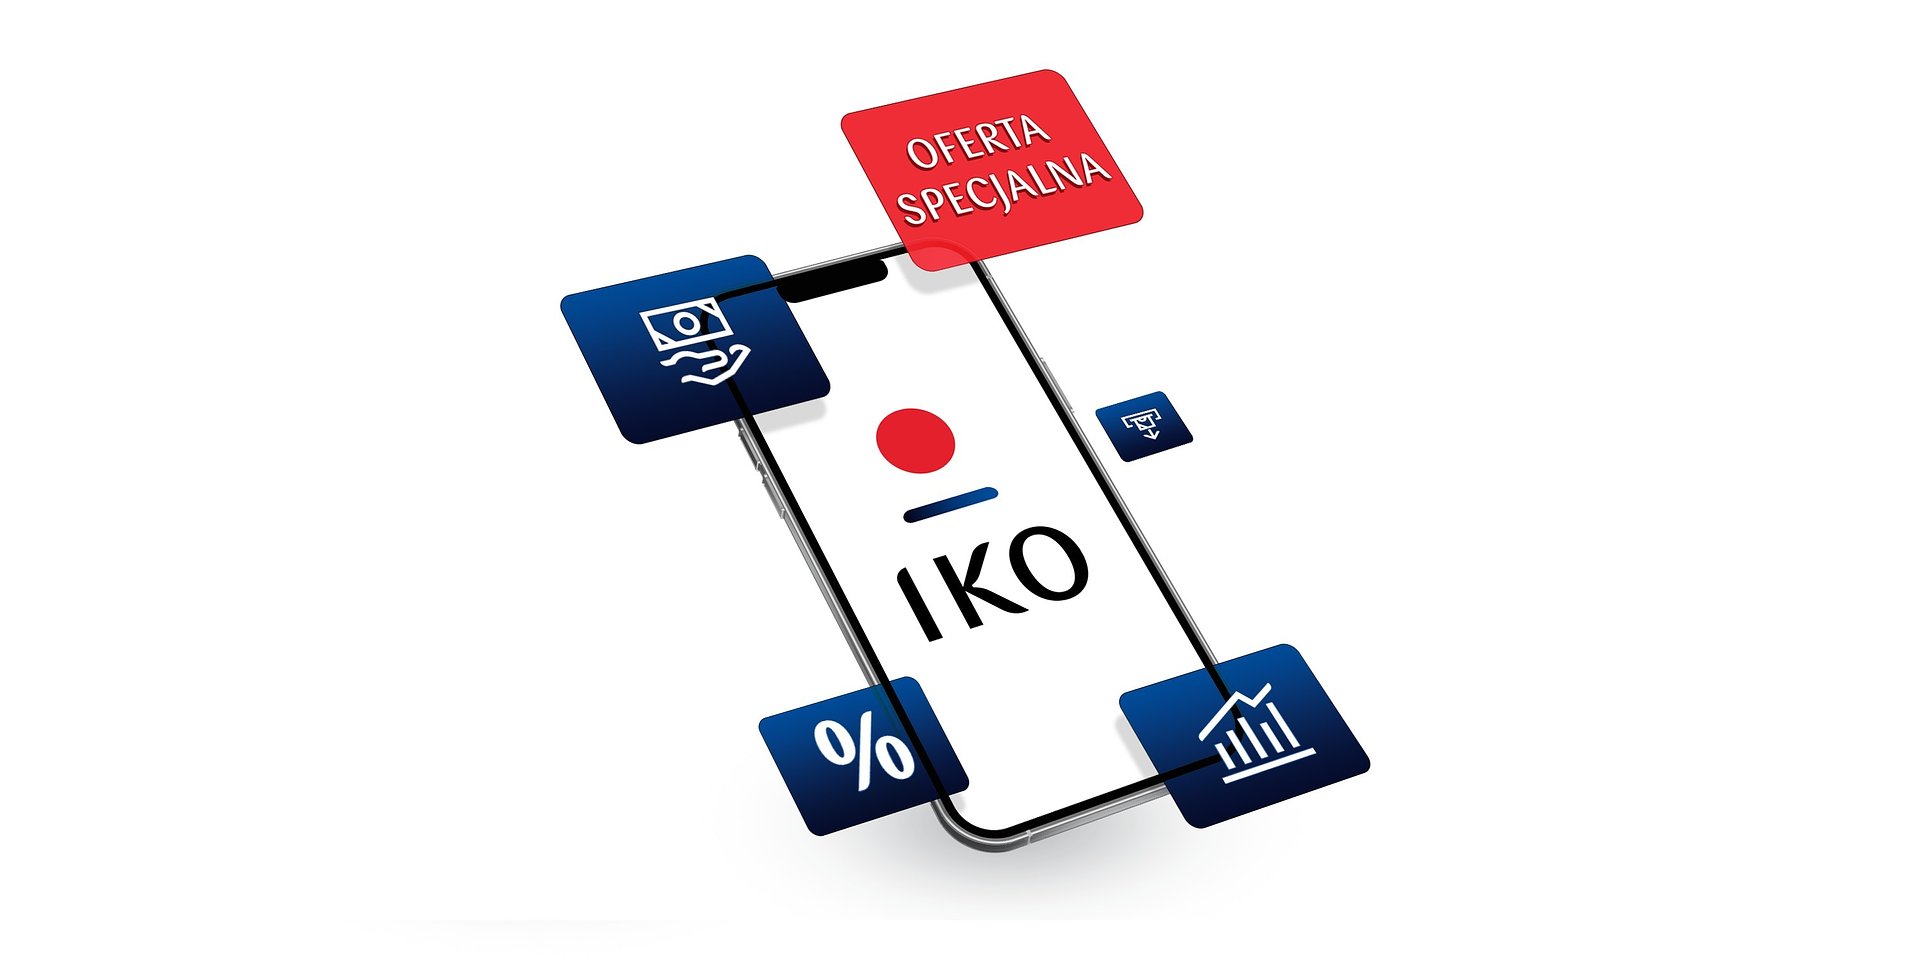 Oferta specjalna dla służb mundurowych w PKO Banku Polskim